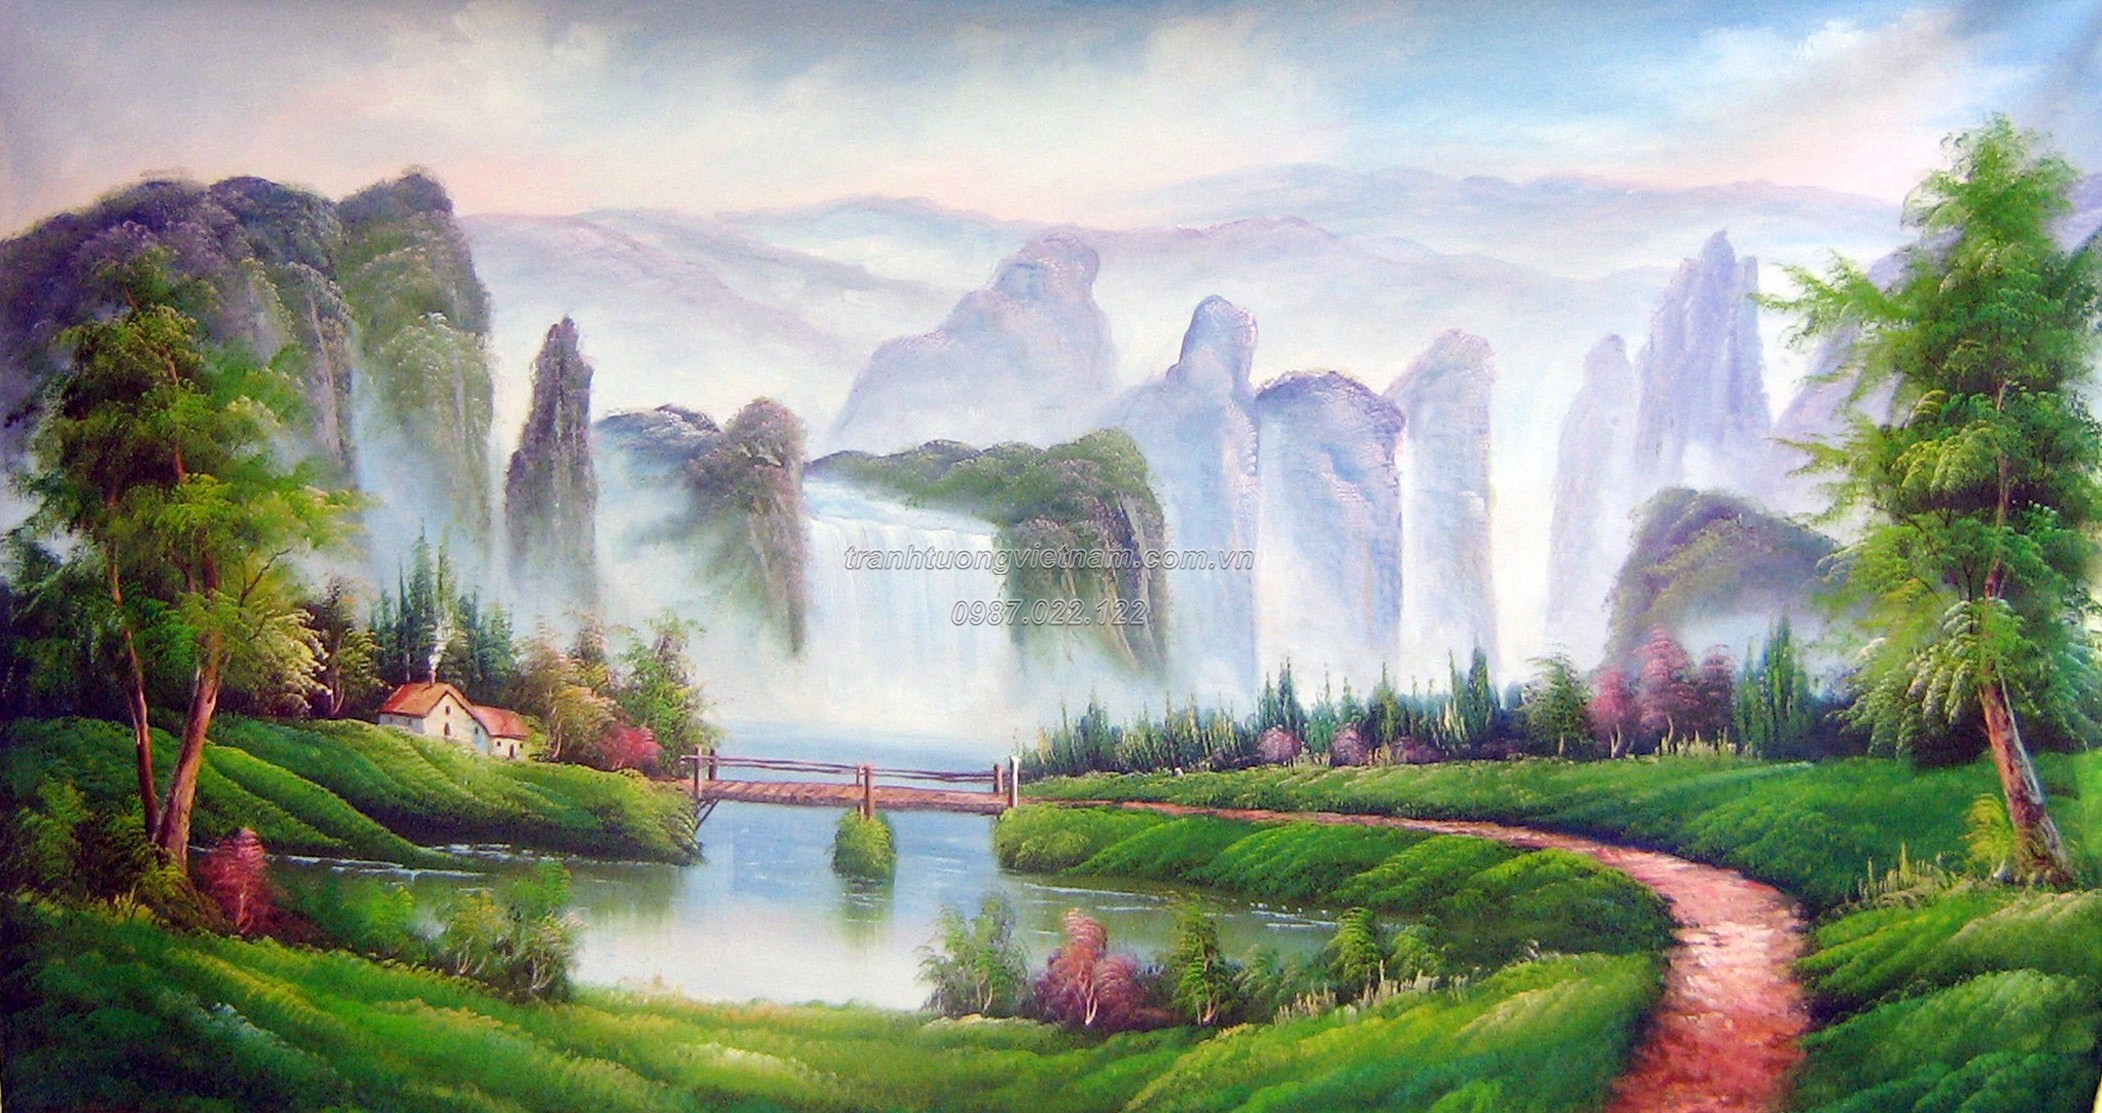 Tranh phong cảnh  35 Mẫu vẽ tranh phong cảnh quê hương thiên nhiên 2020   Vẽ tranh tường 3D đẹp giá rẻ nhất tại Hà Nội  Thi công trọn gói